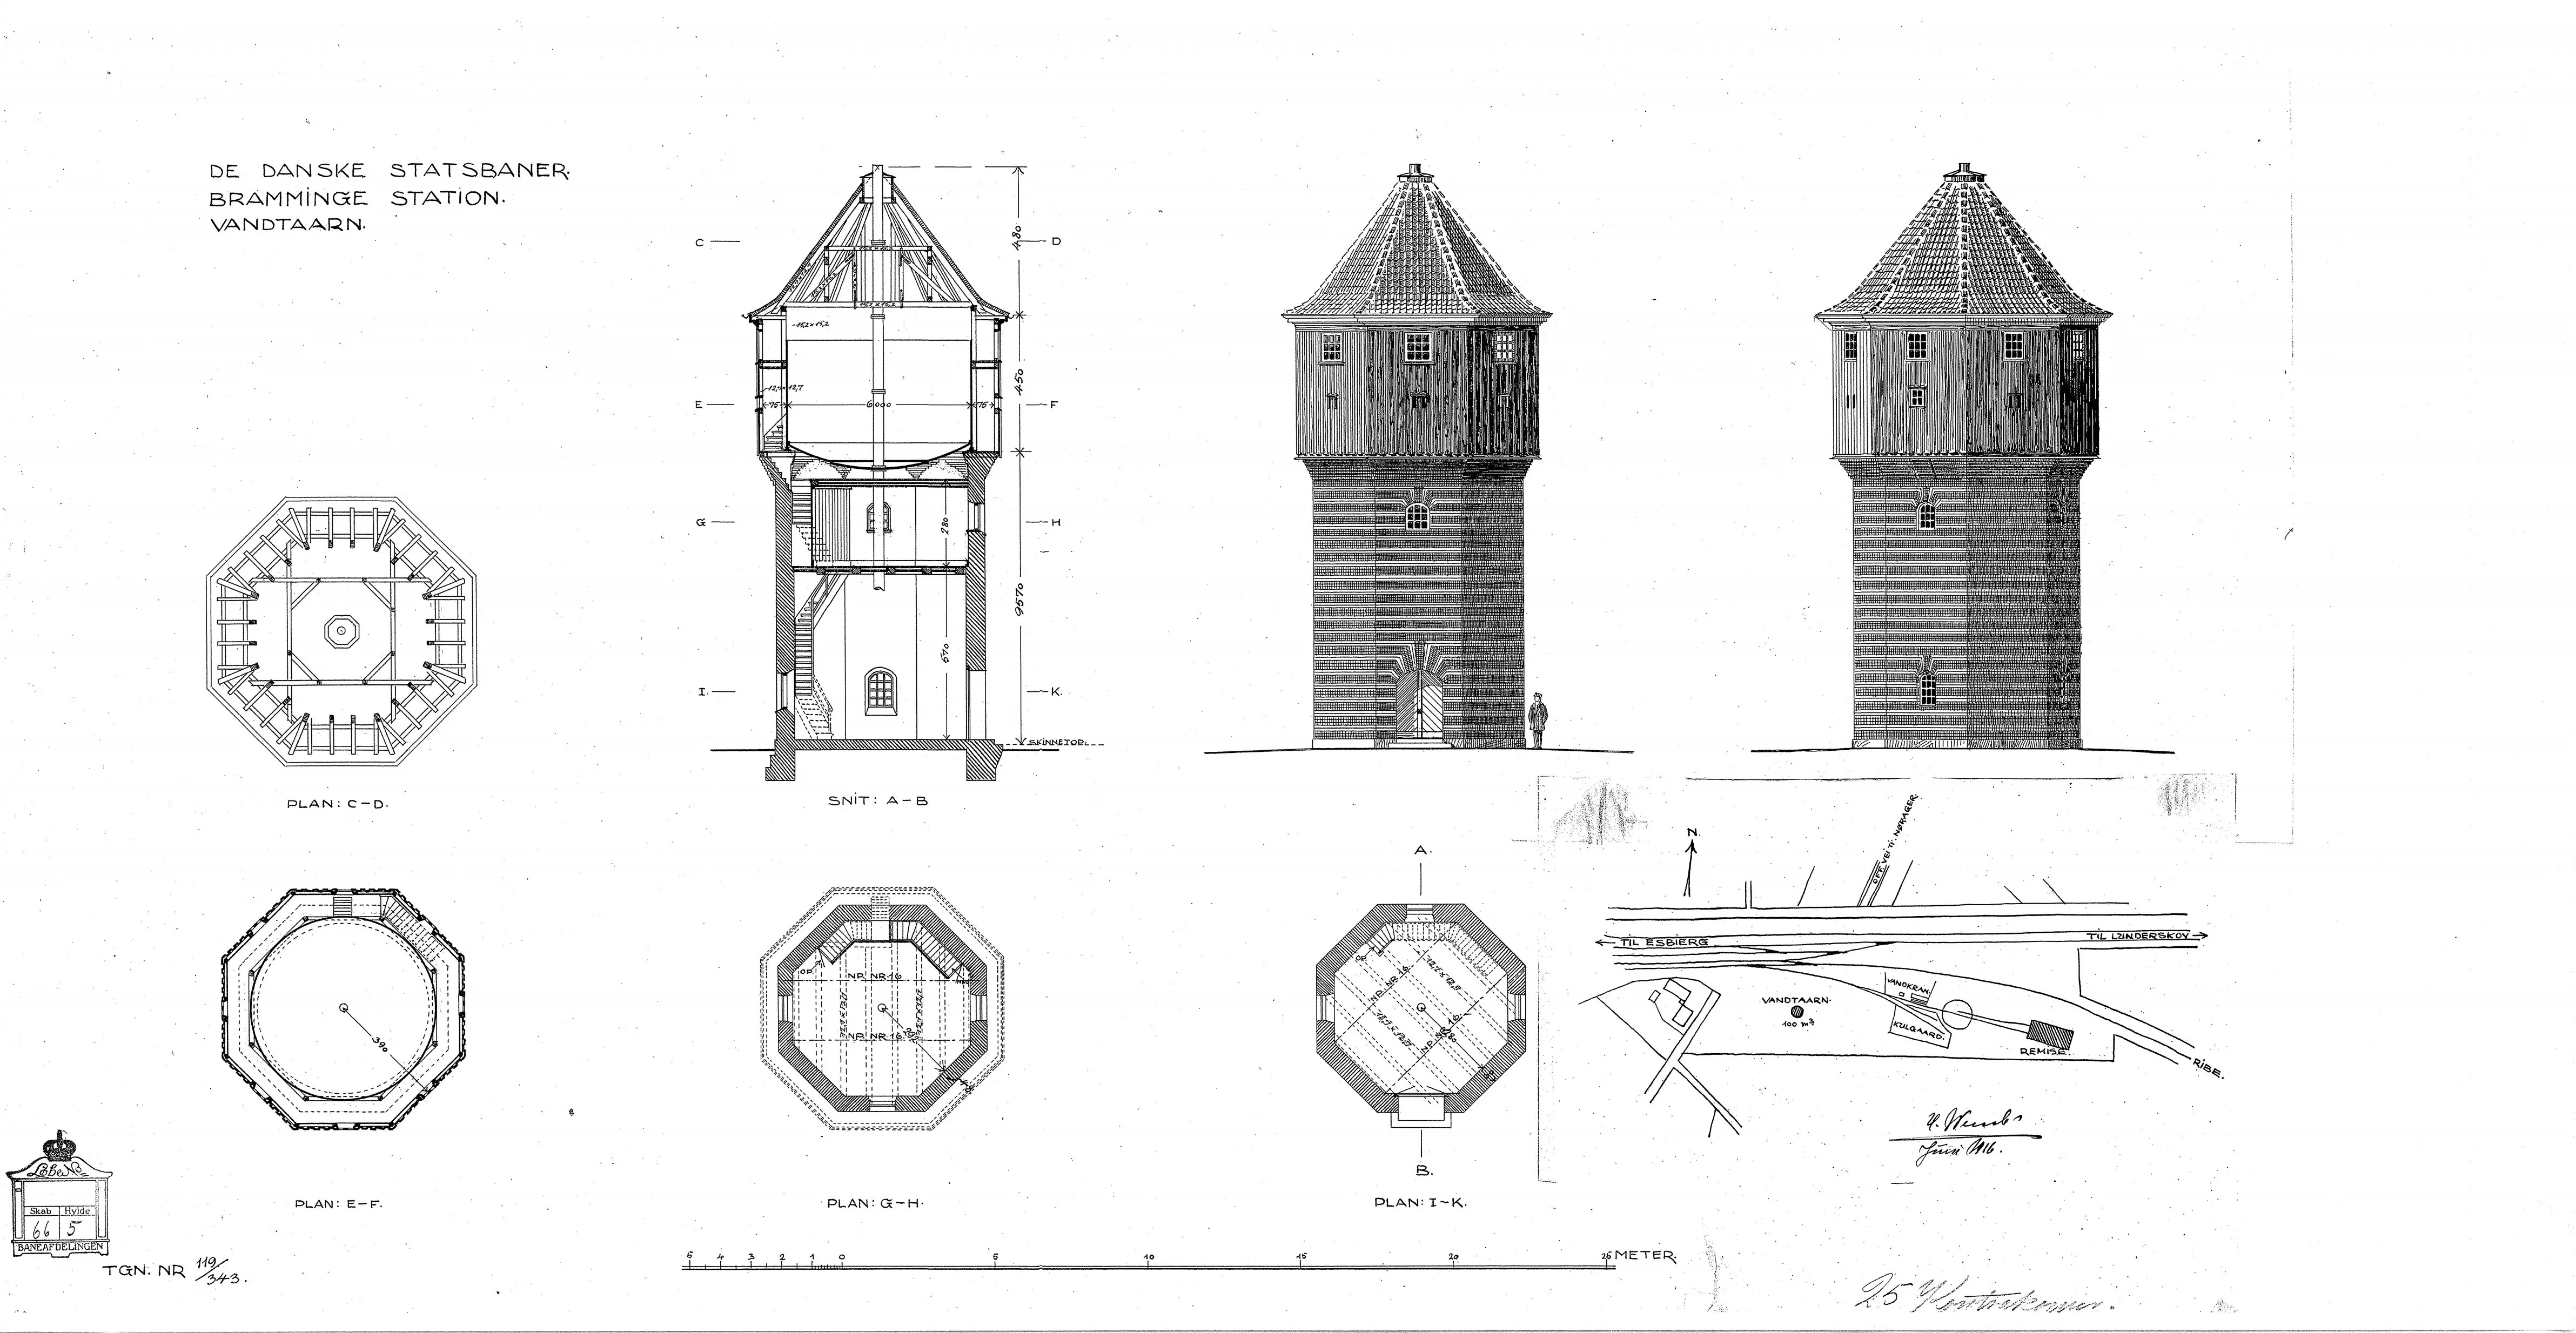 Tegning af Bramming Stations vandtårn.